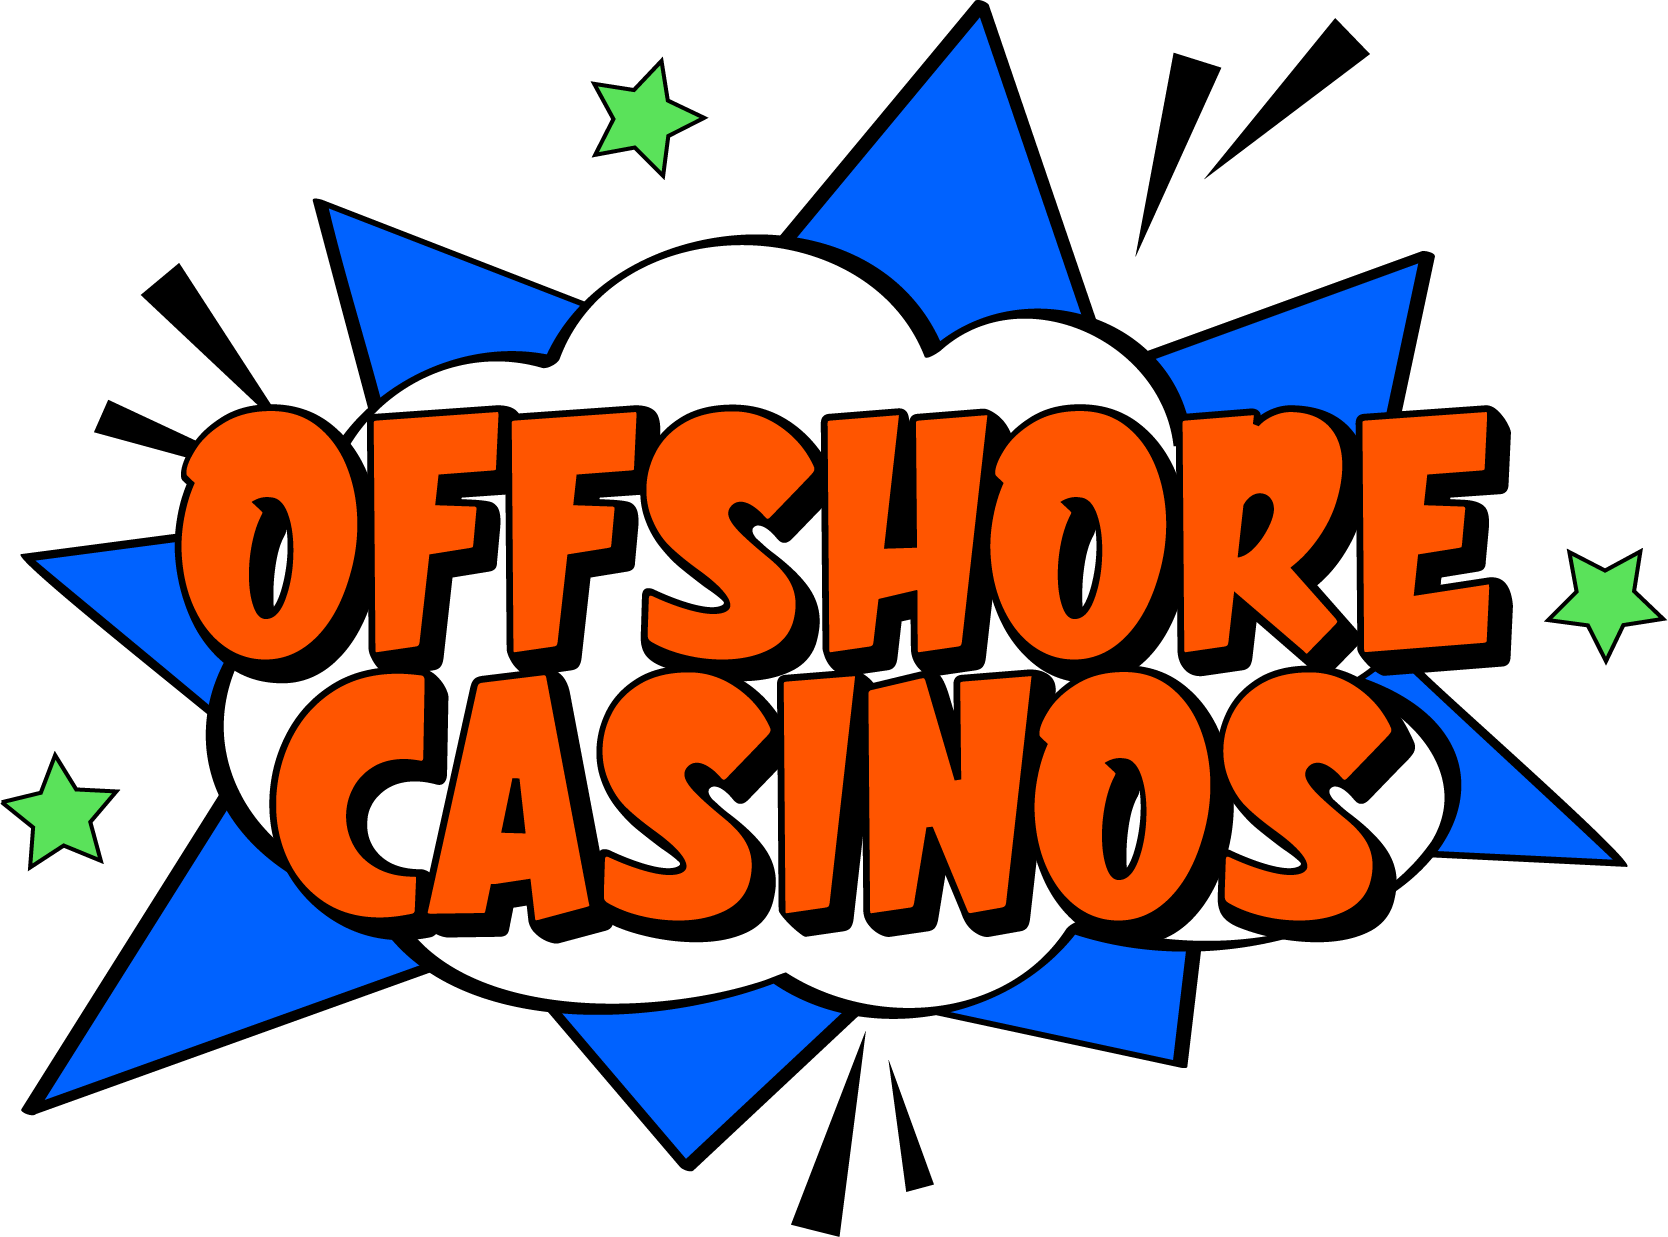 Offshore Casinos